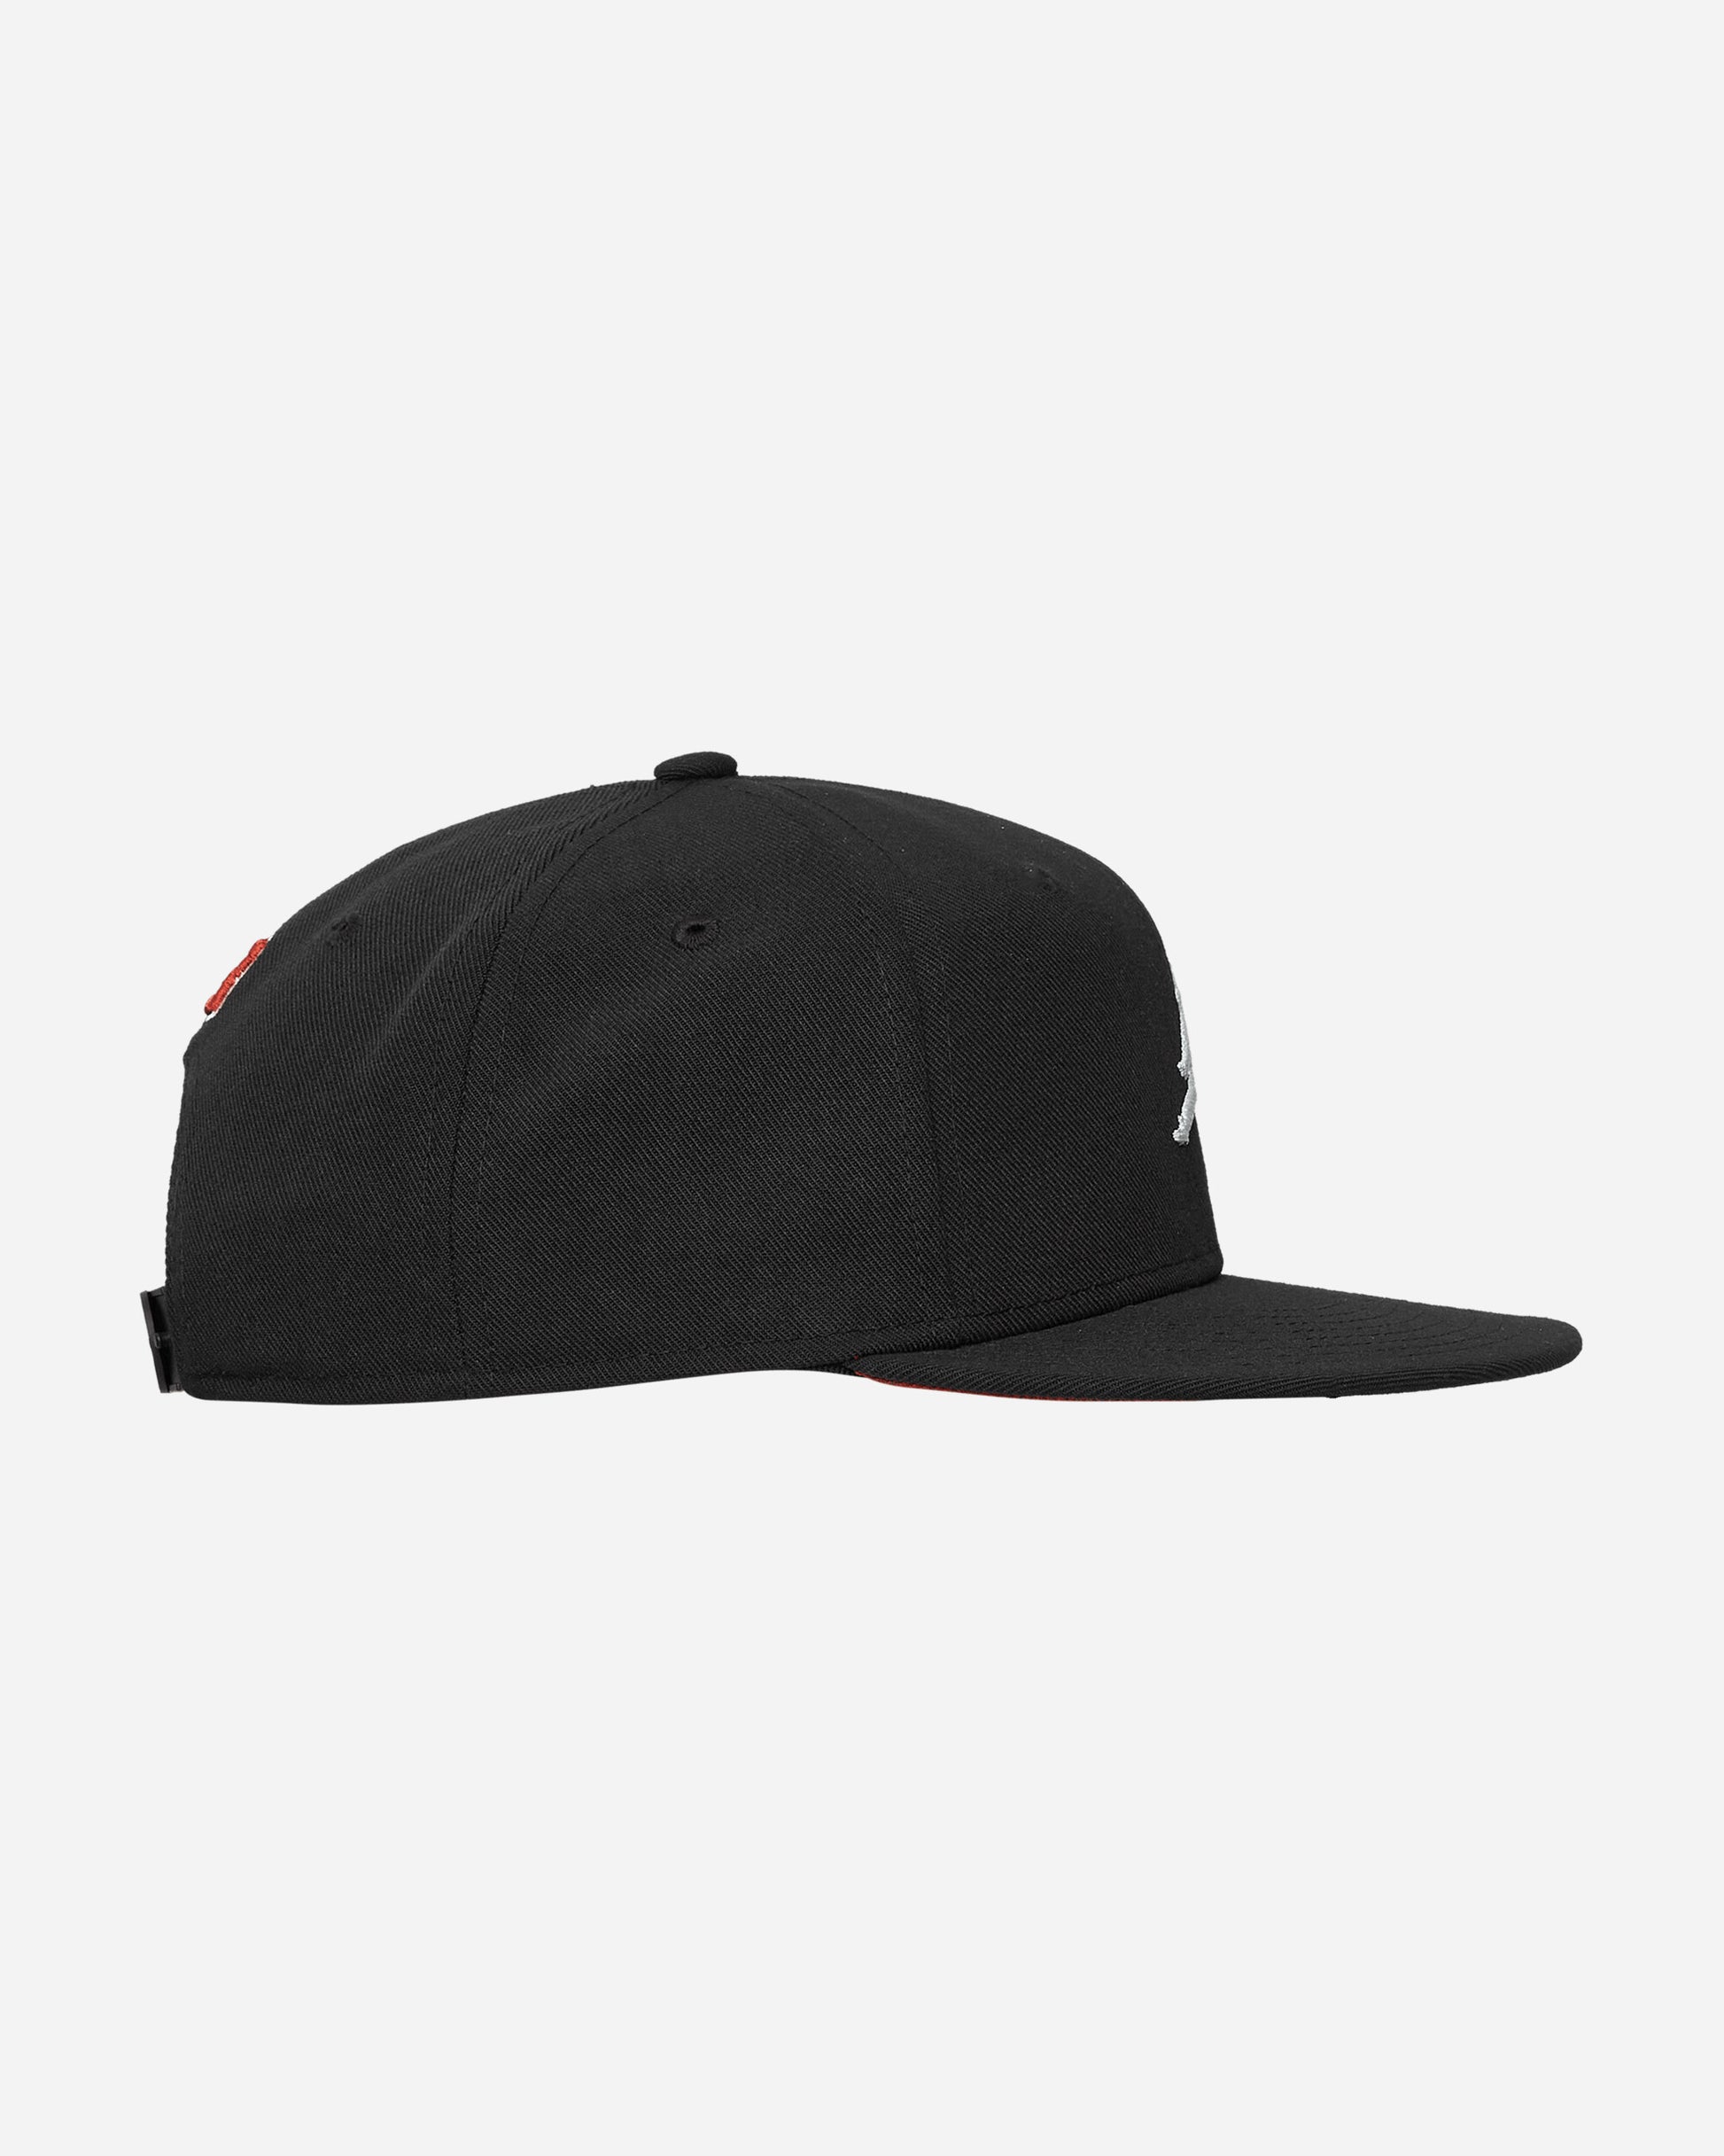 Nike Jordan U J Pro Cap S Fb Flt Mvp Black/Dune Red Hats Caps FV5292-010